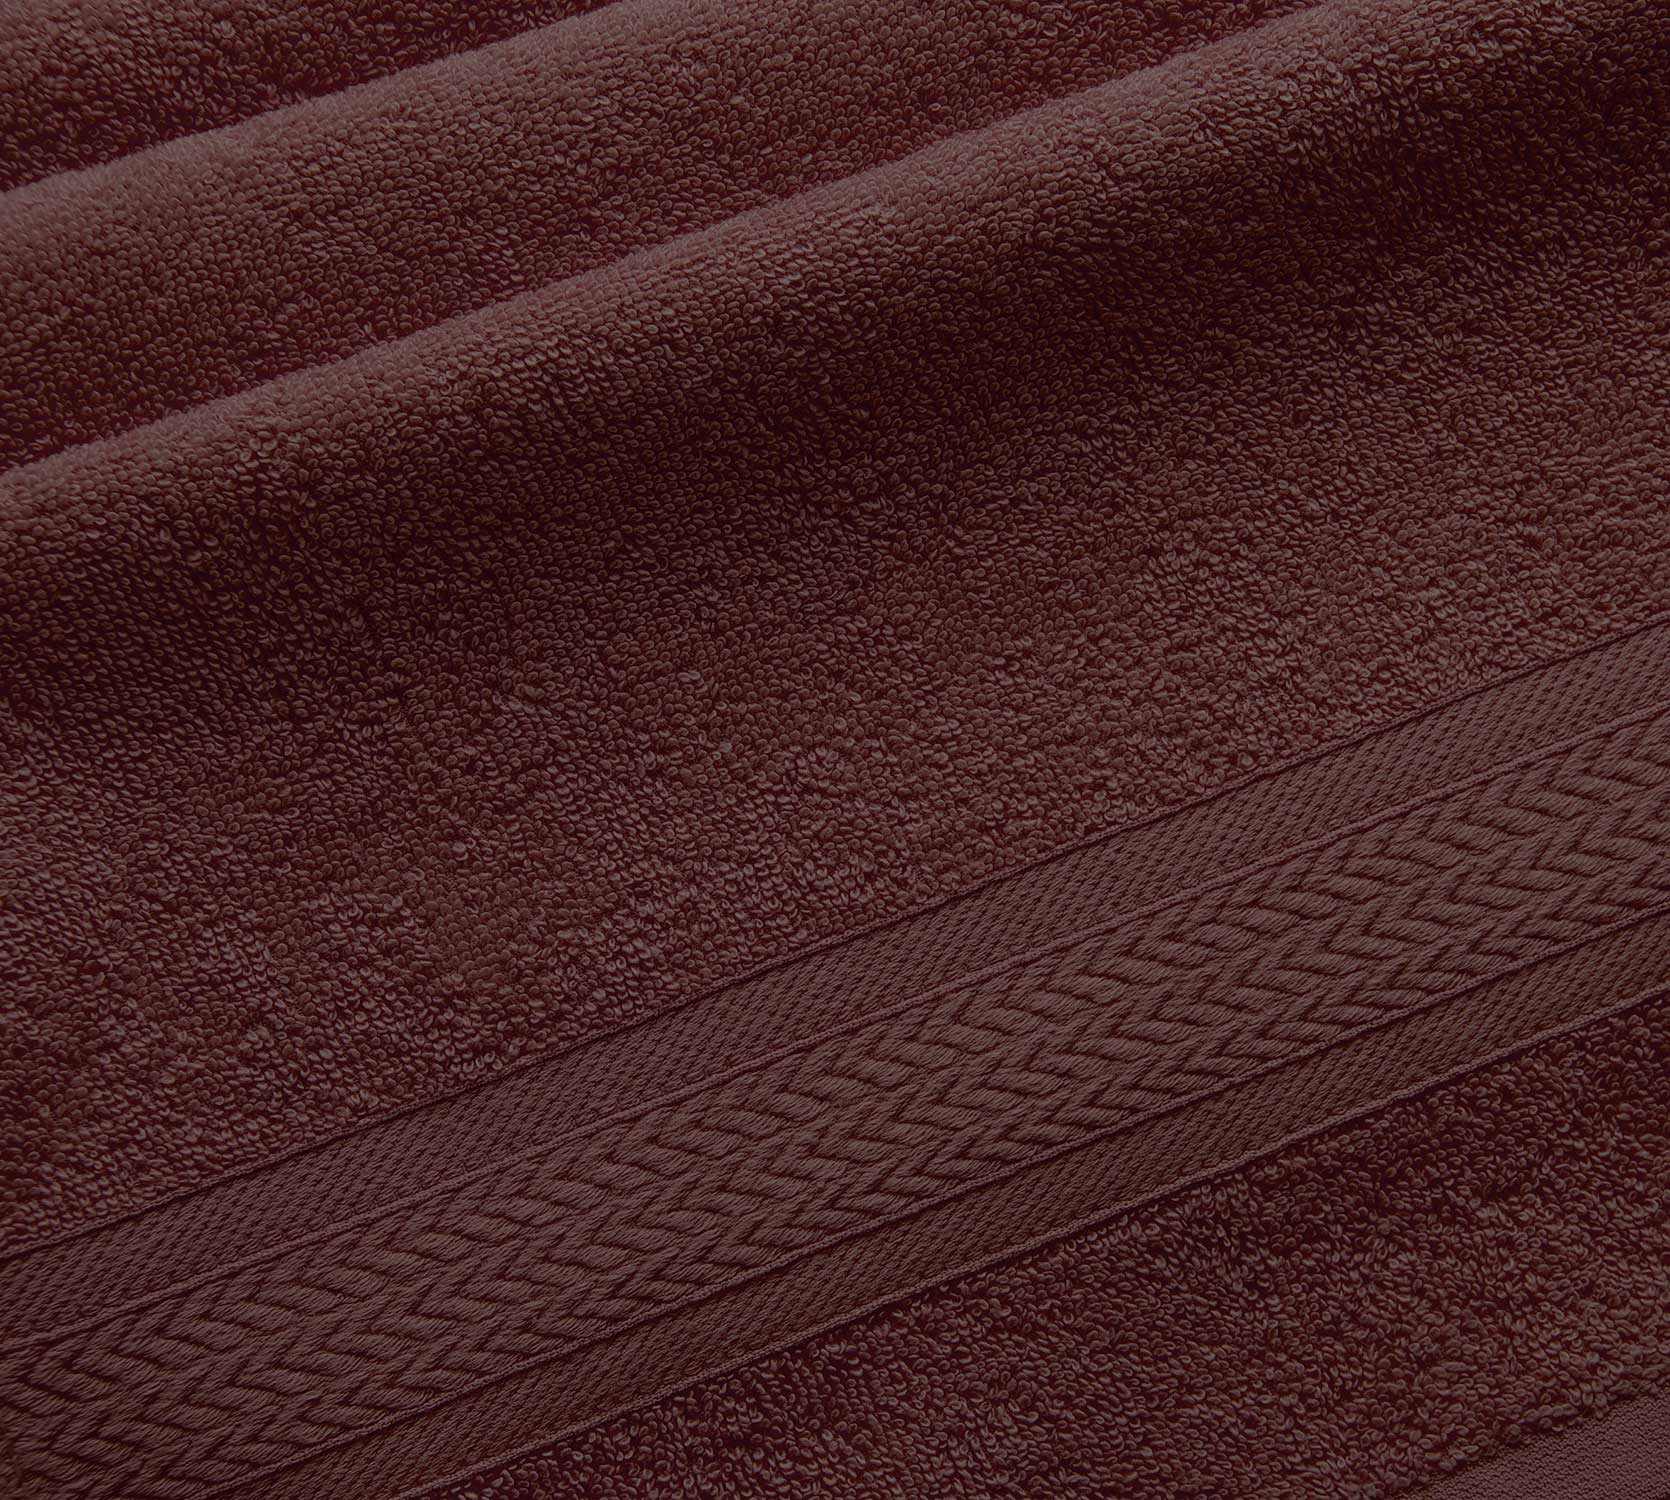 Постельное белье Полотенце махровое банное 70х130, Утро коричневый  фото